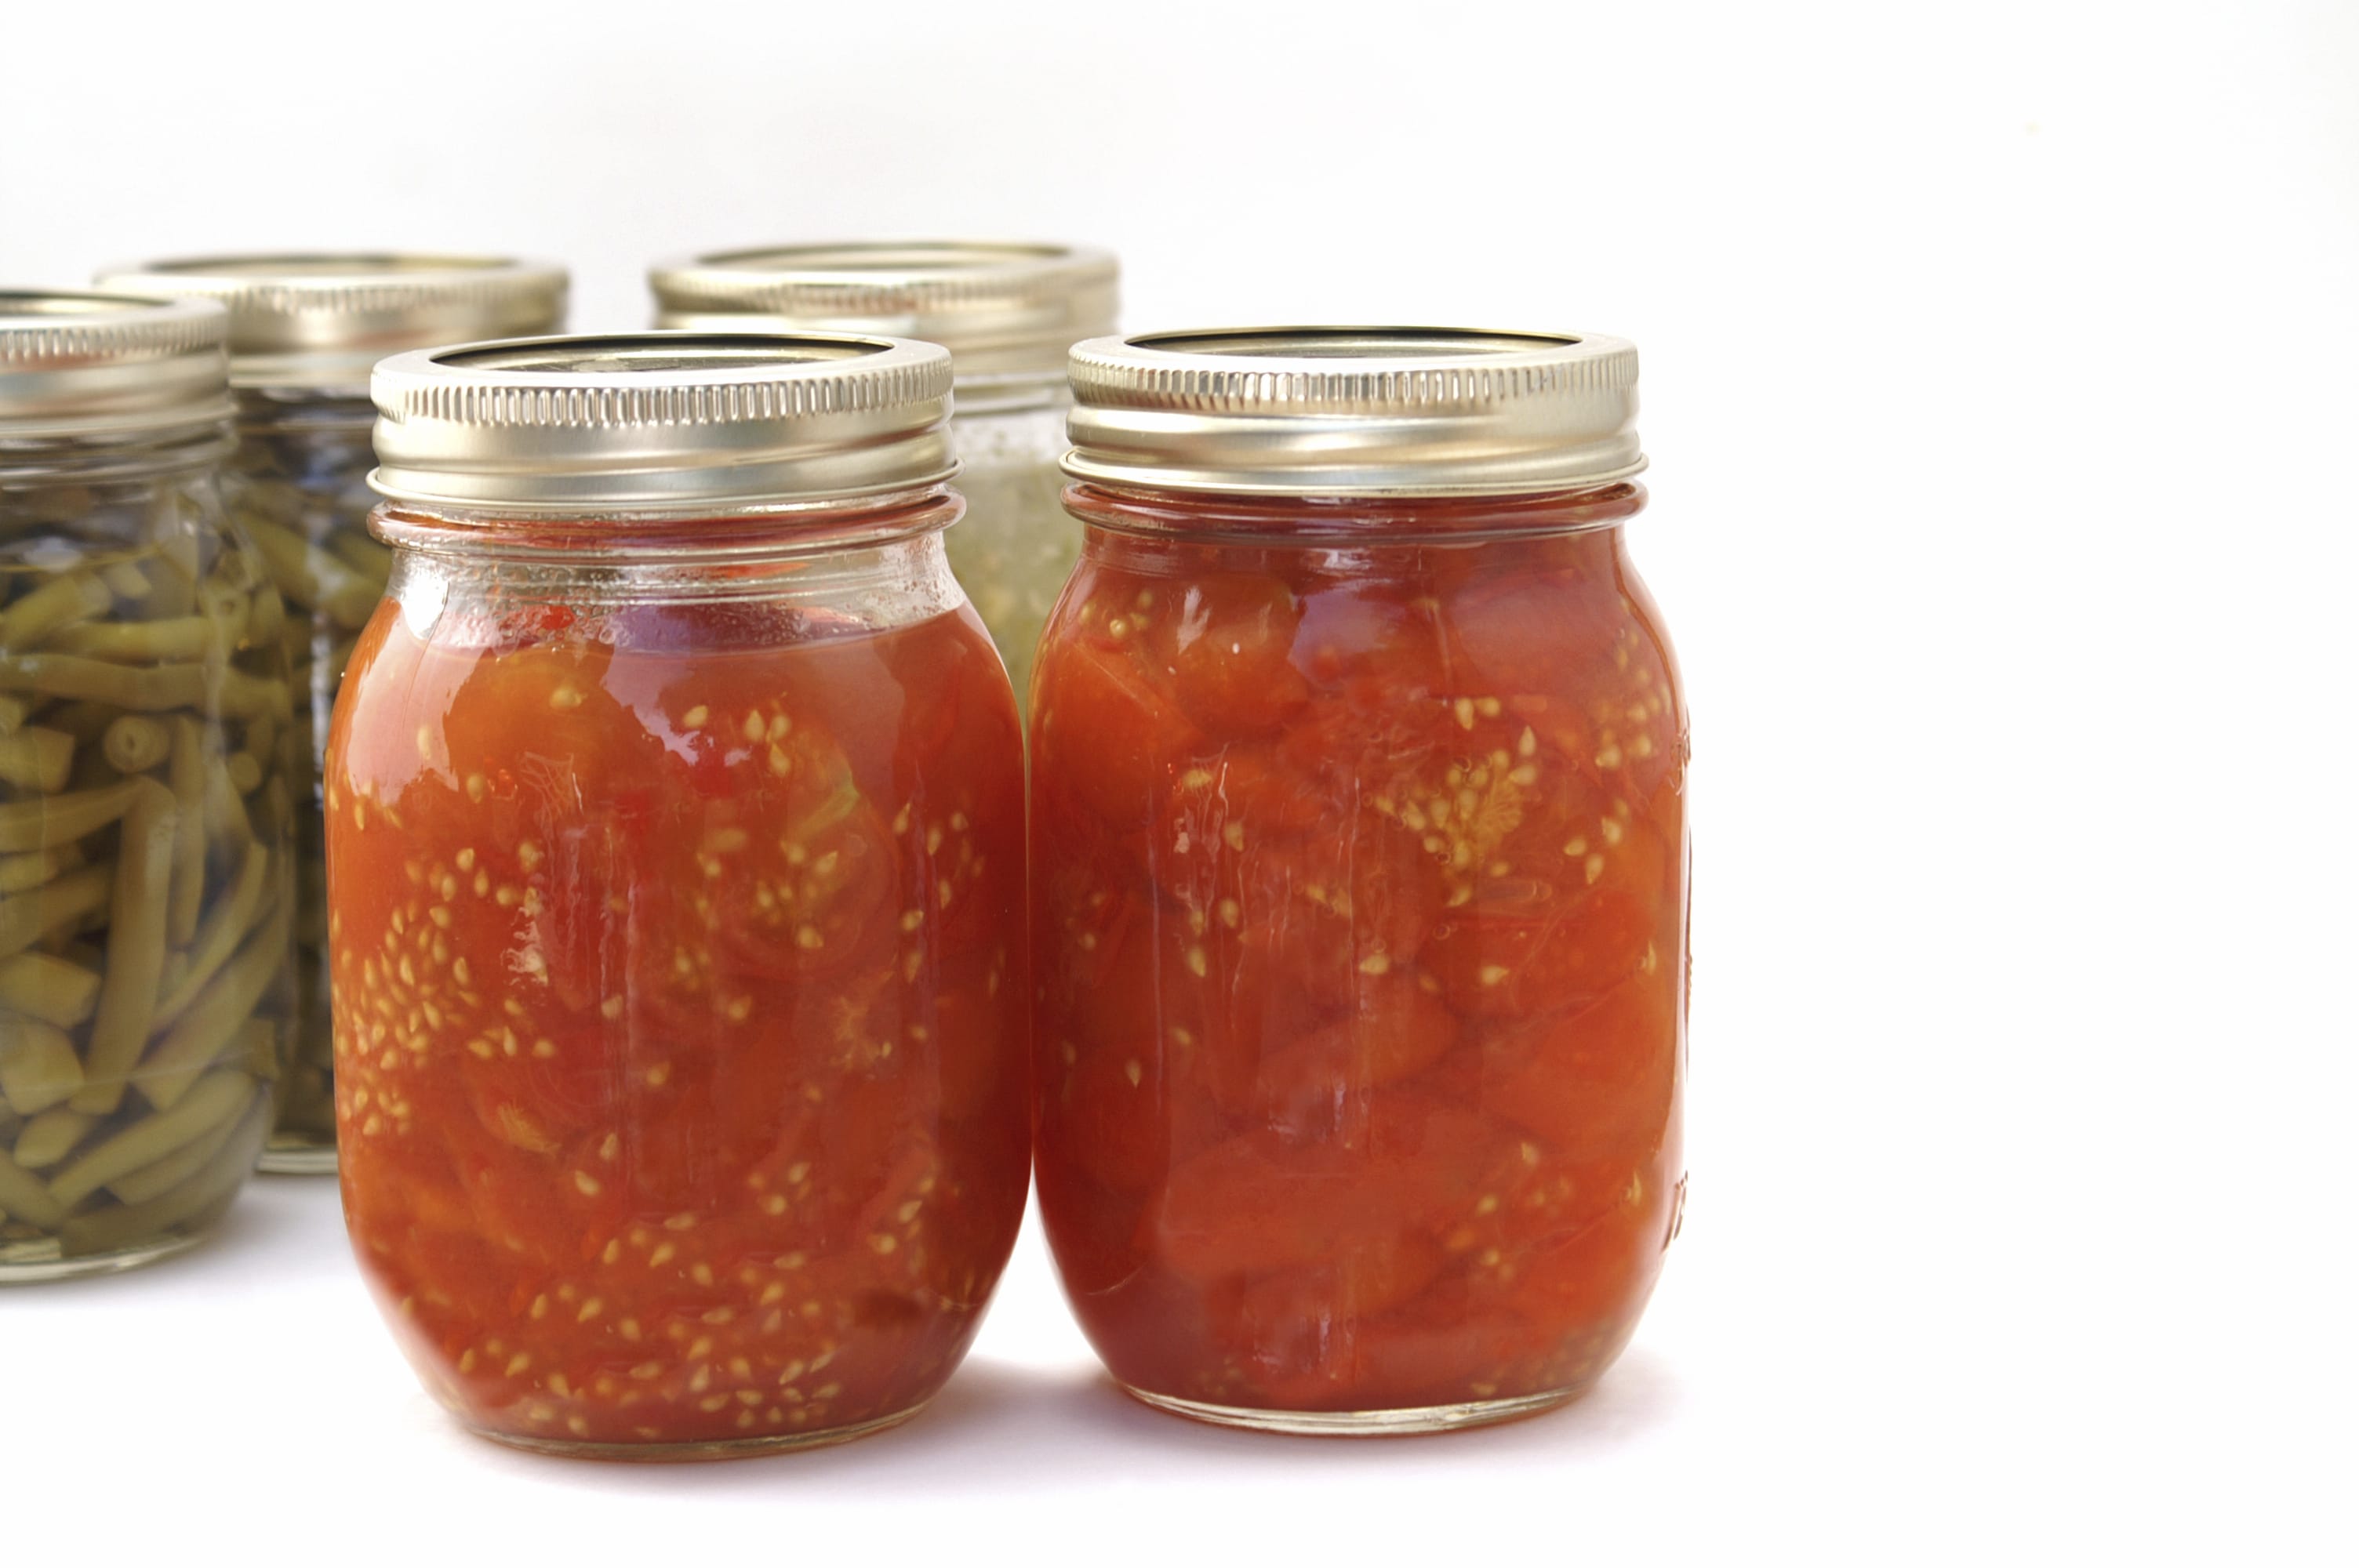 Ricetta conserva pomodori pelati: come prepararla in casa